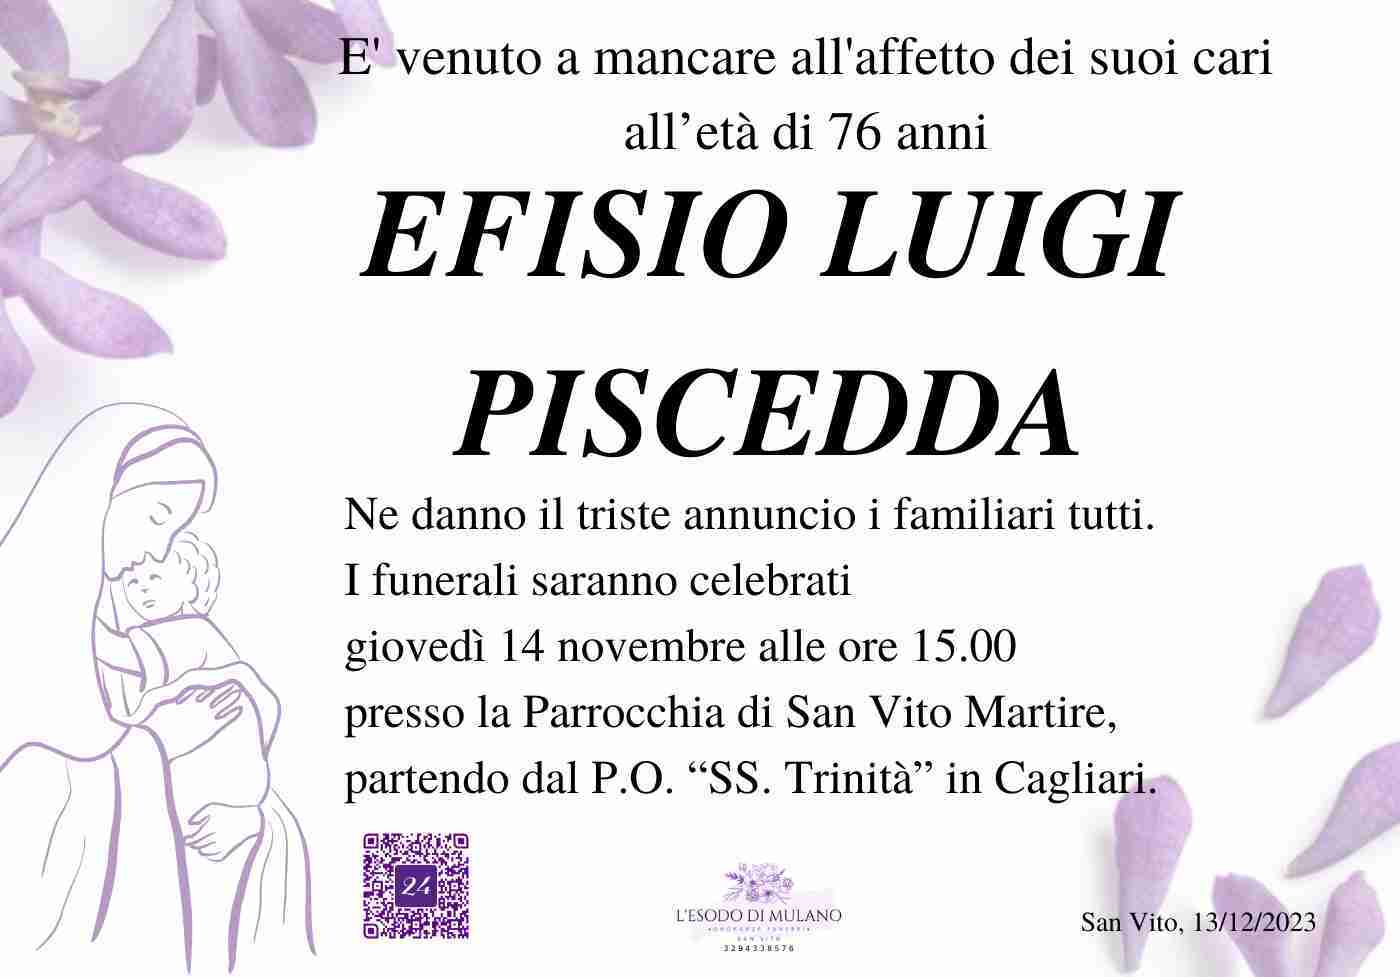 Efisio Luigi Piscedda